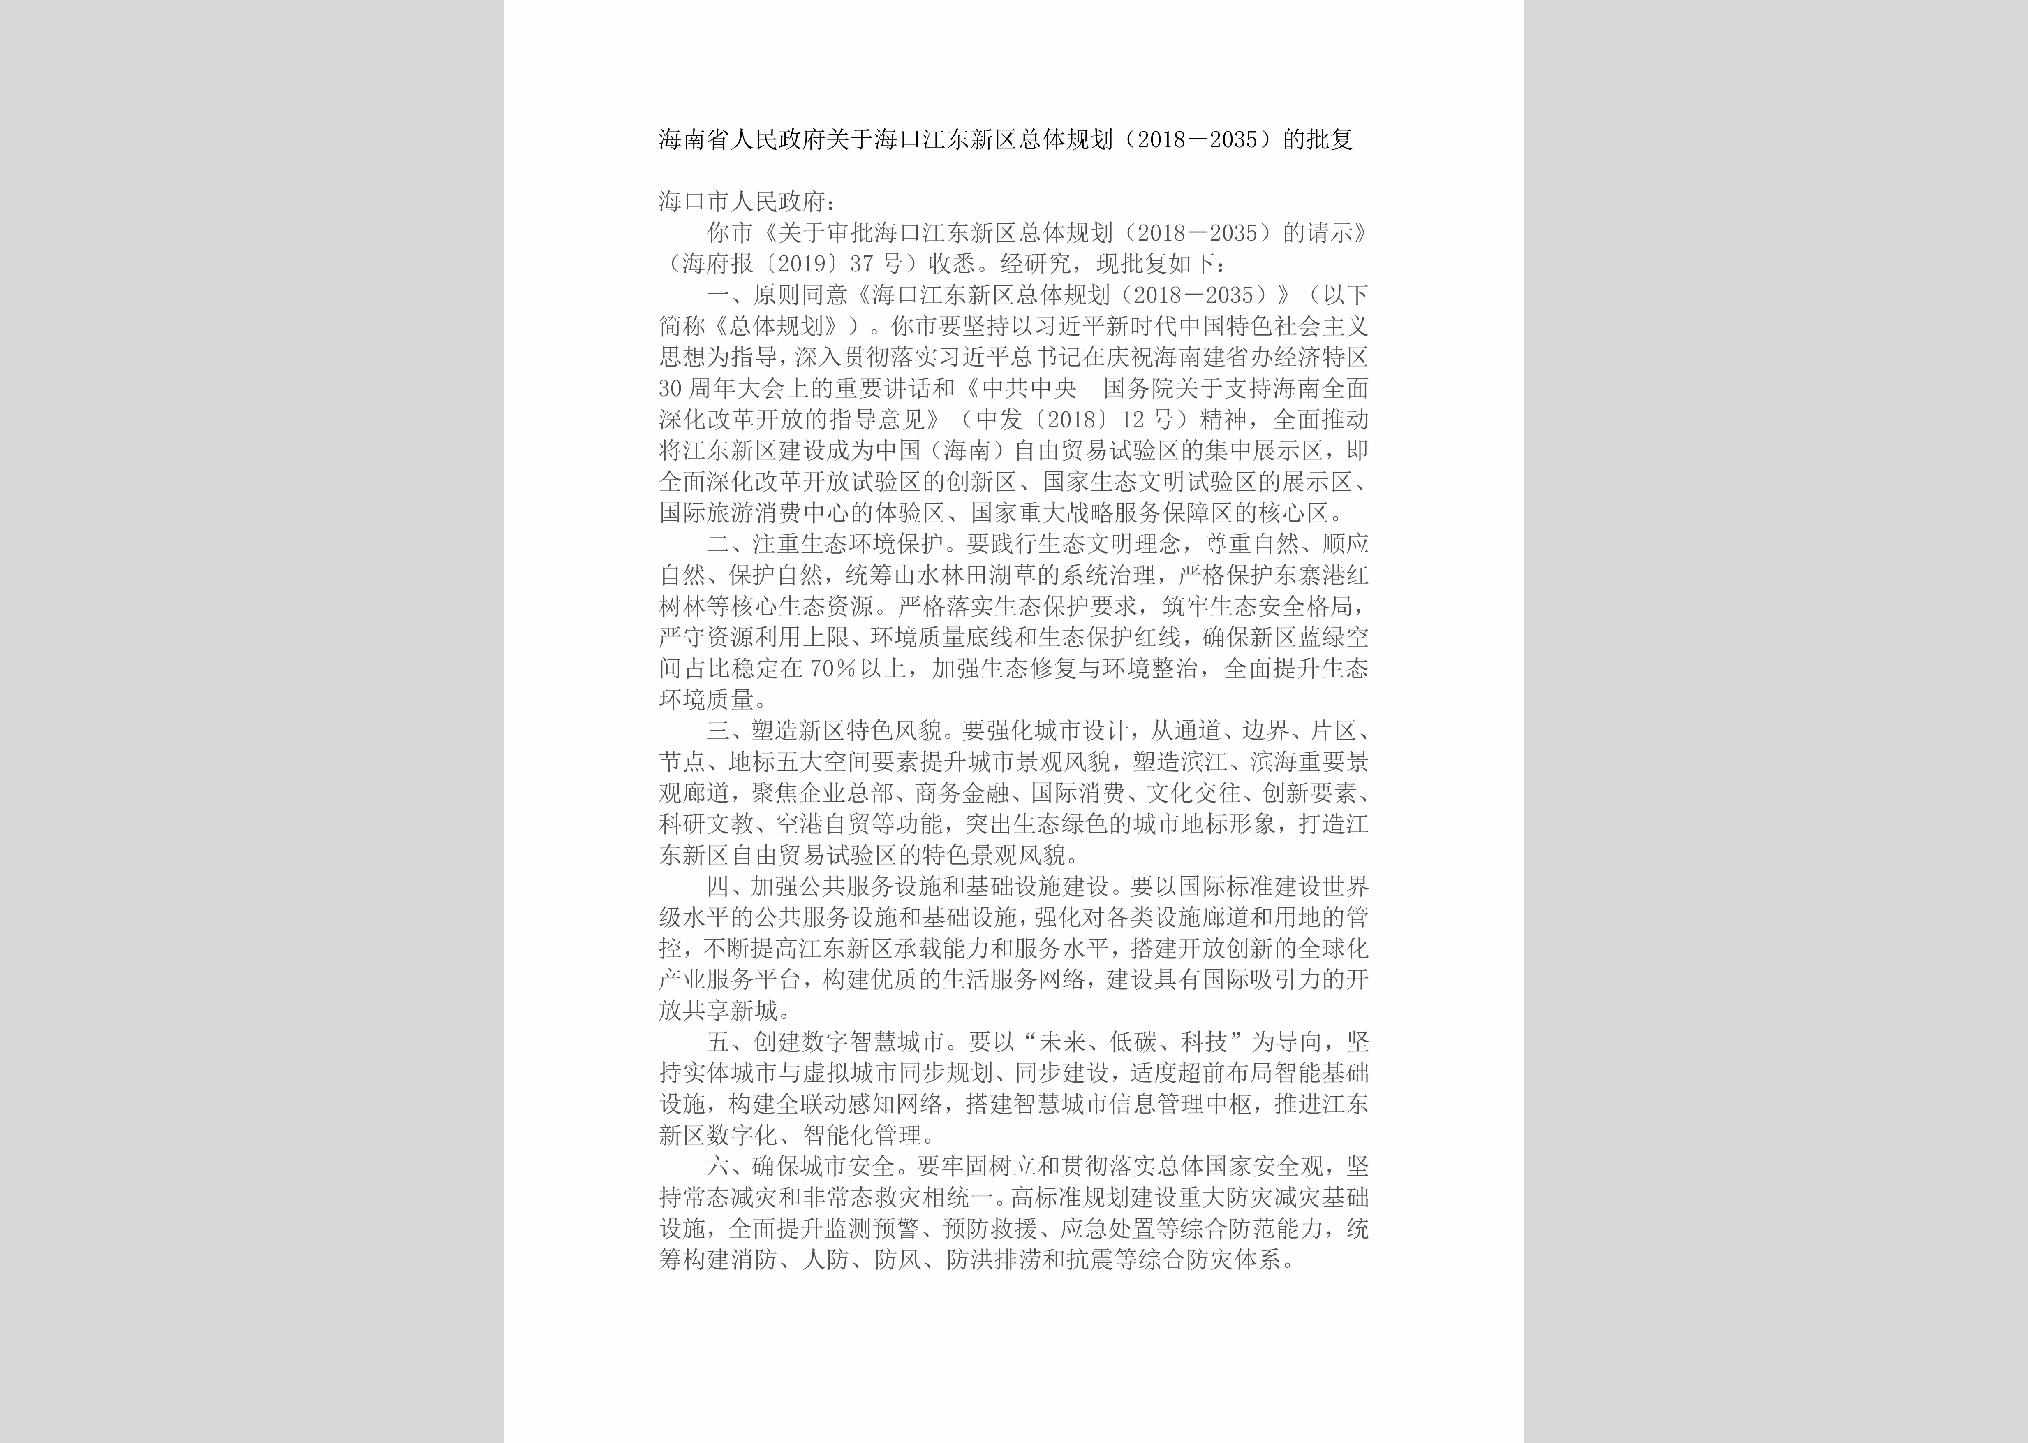 HAN-JDXQZTGH-2019：海南省人民政府关于海口江东新区总体规划（2018－2035）的批复